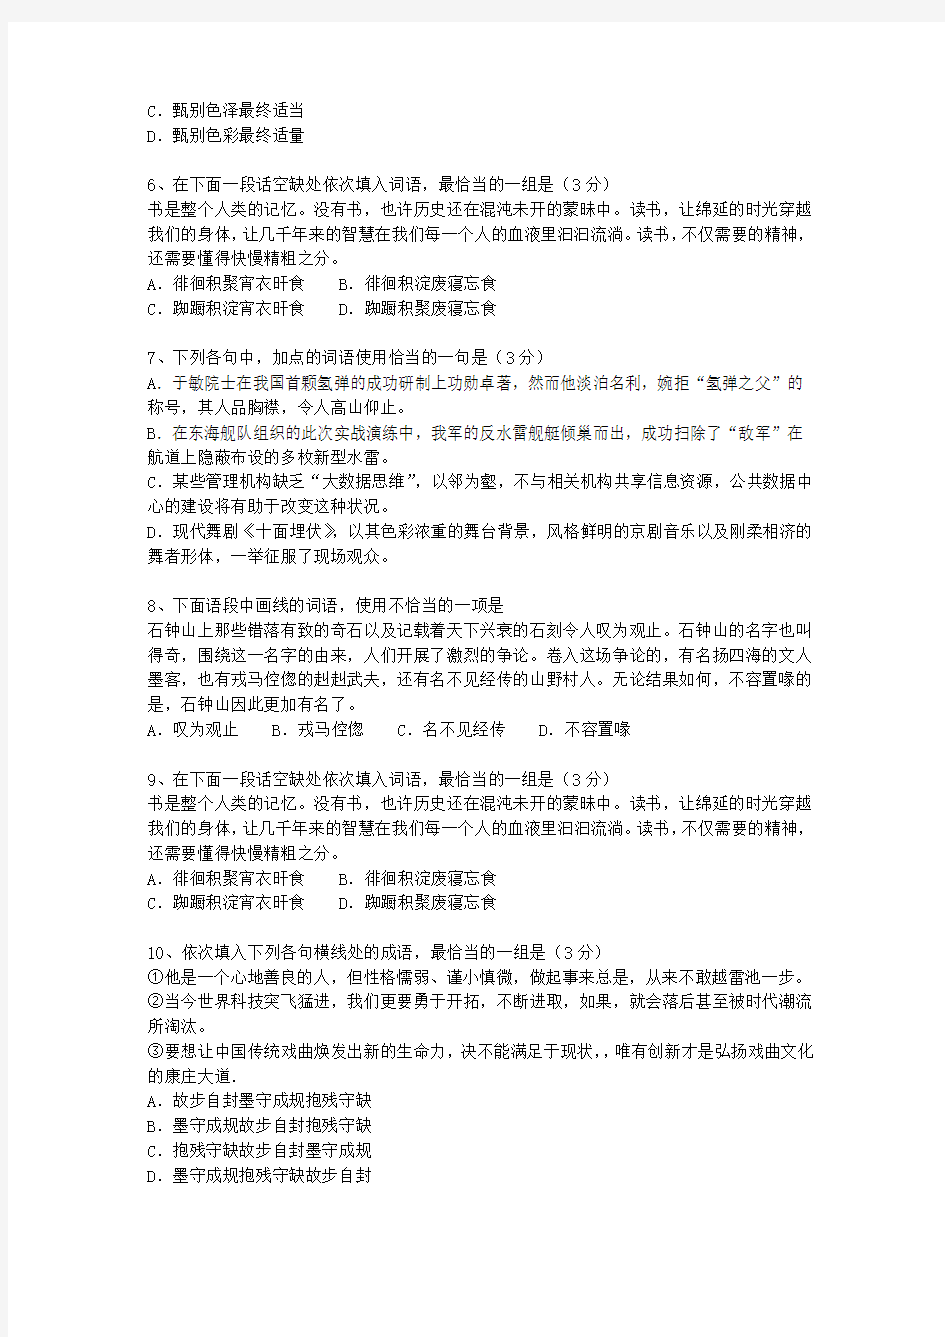 2012西藏自治区语文大纲(答案详解版)考试答题技巧